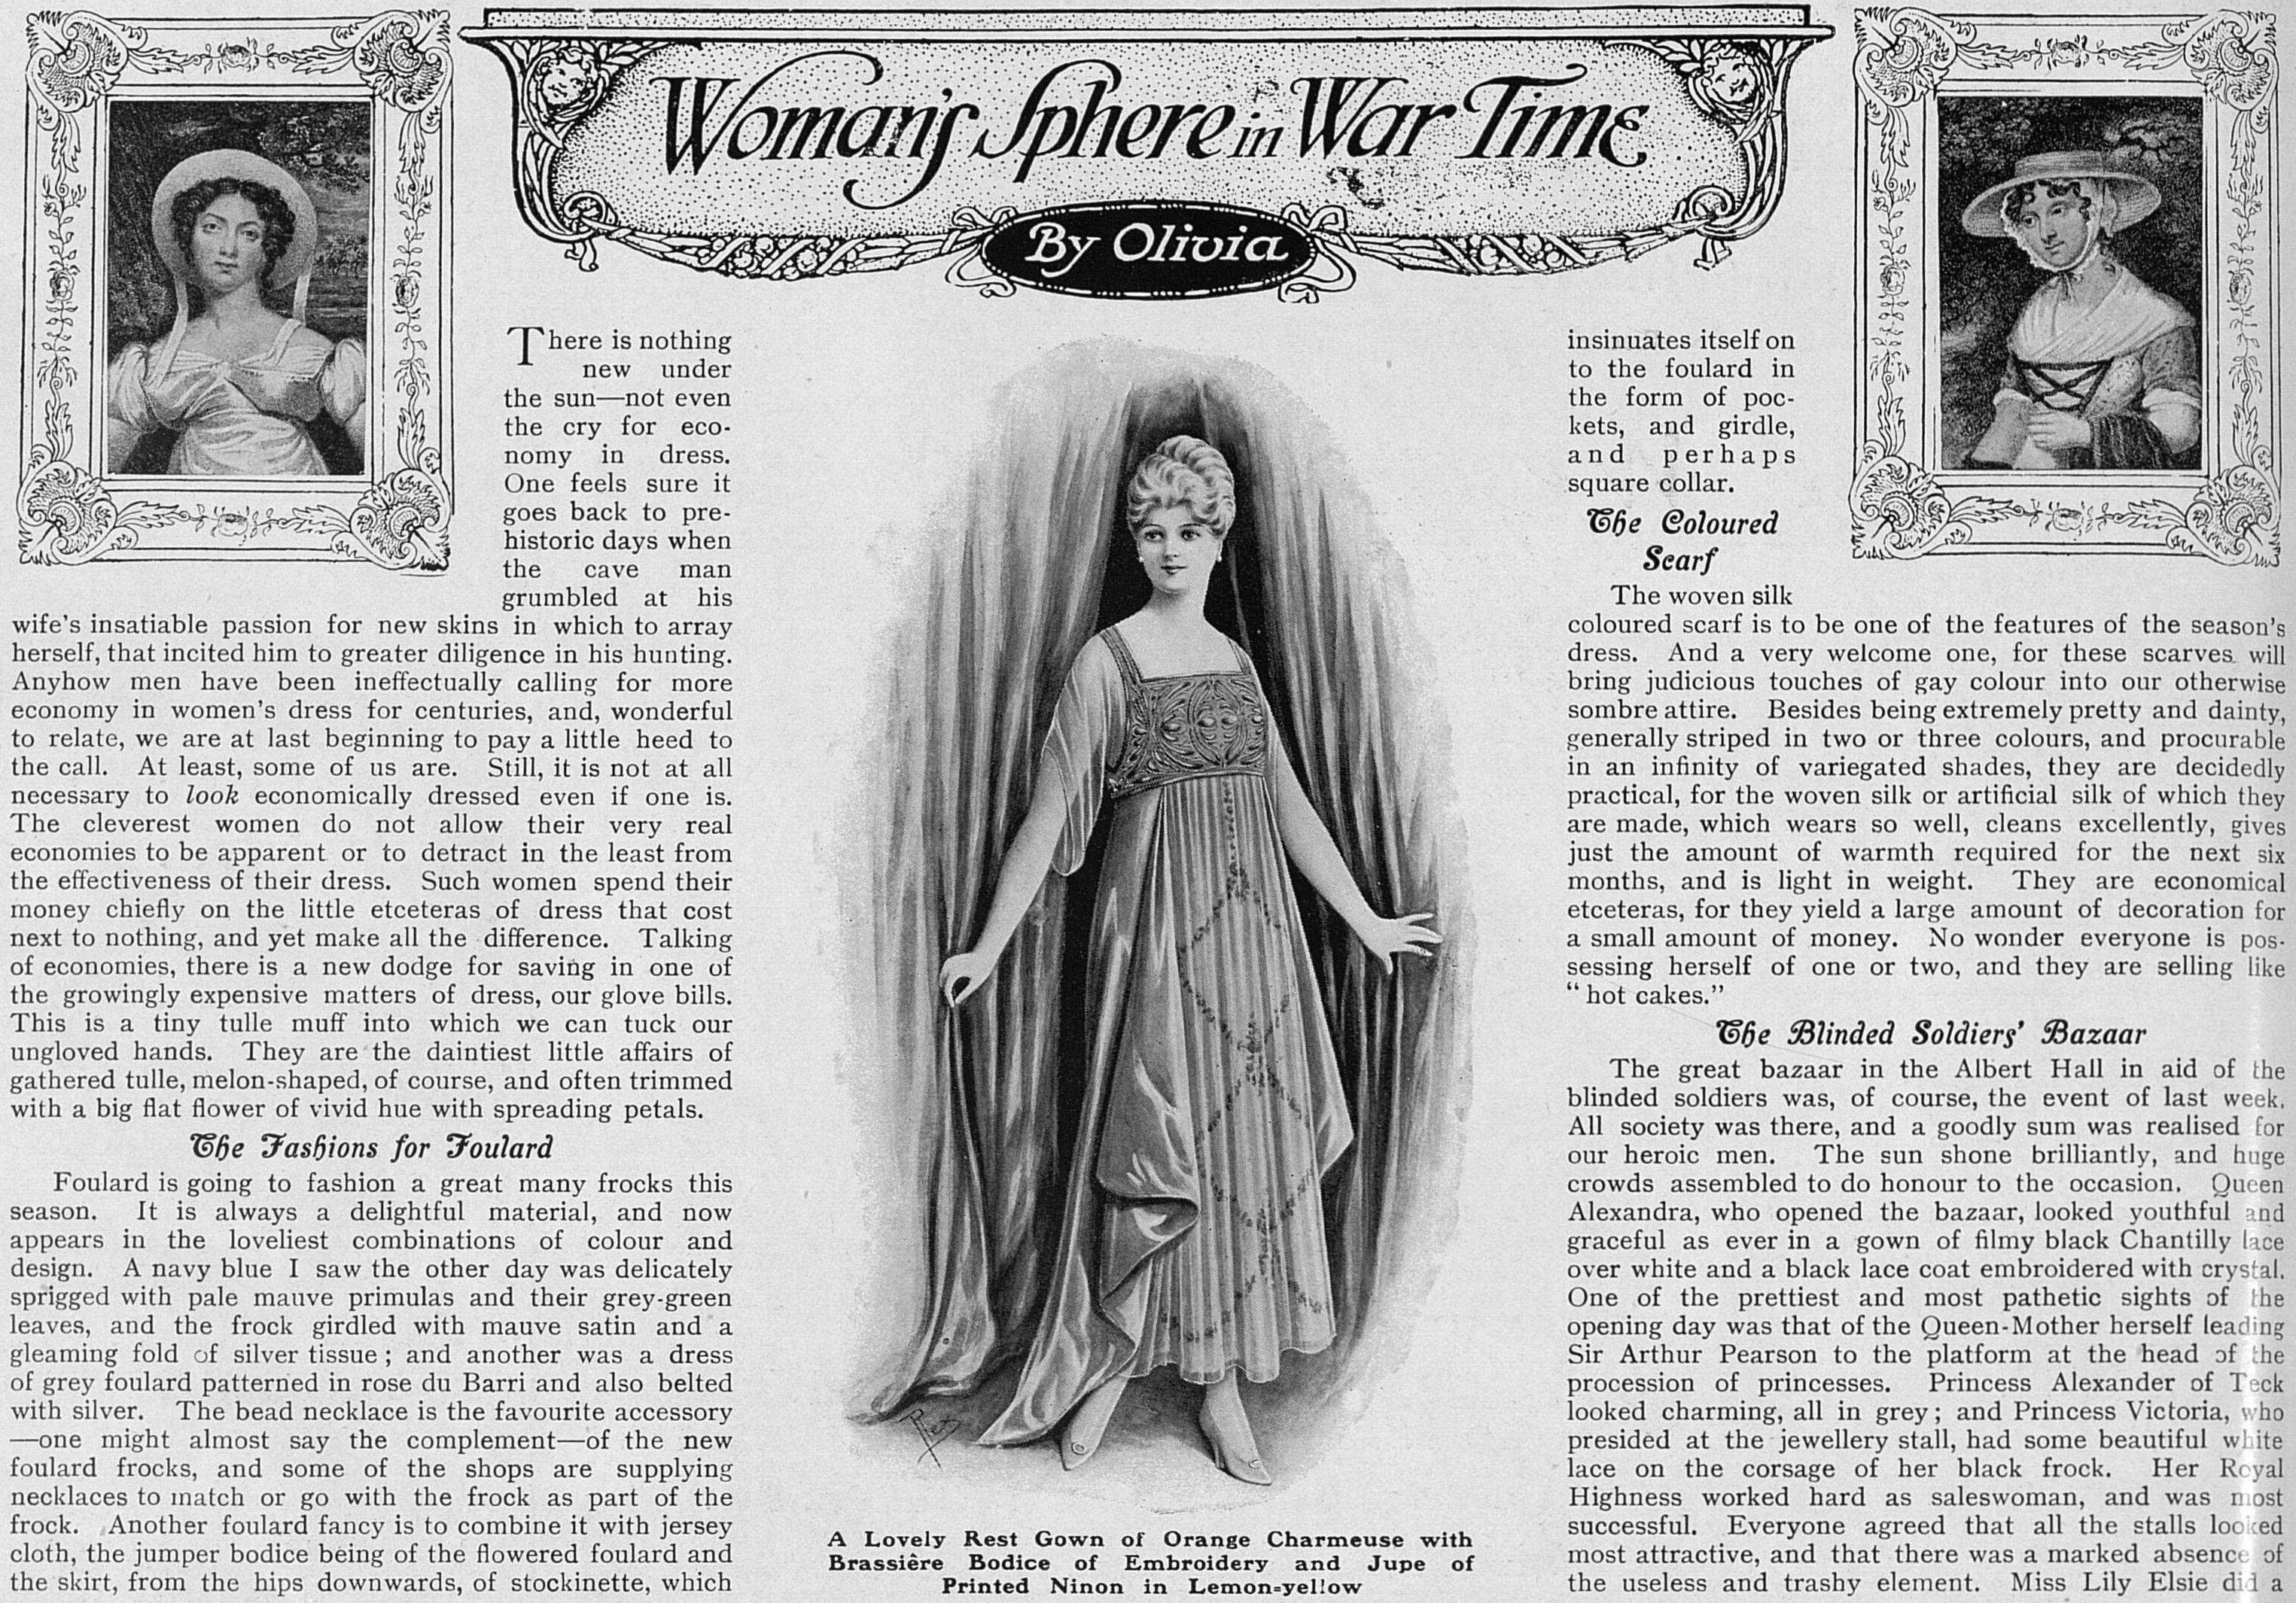 WomansSphereInWarTime_19May1917